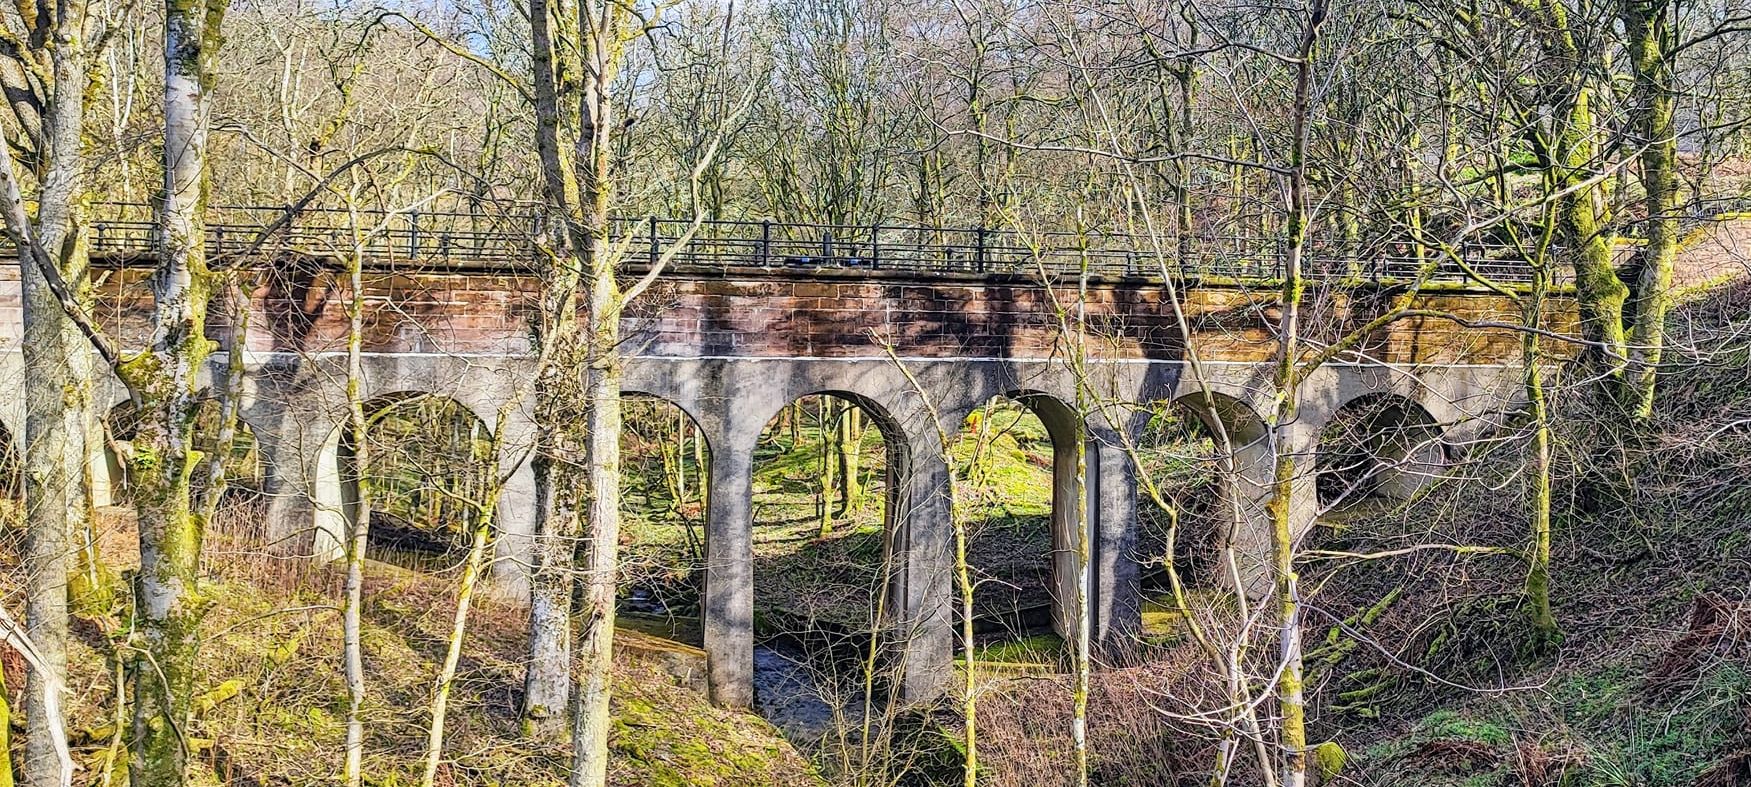 Viaduct in Cauldname Glen